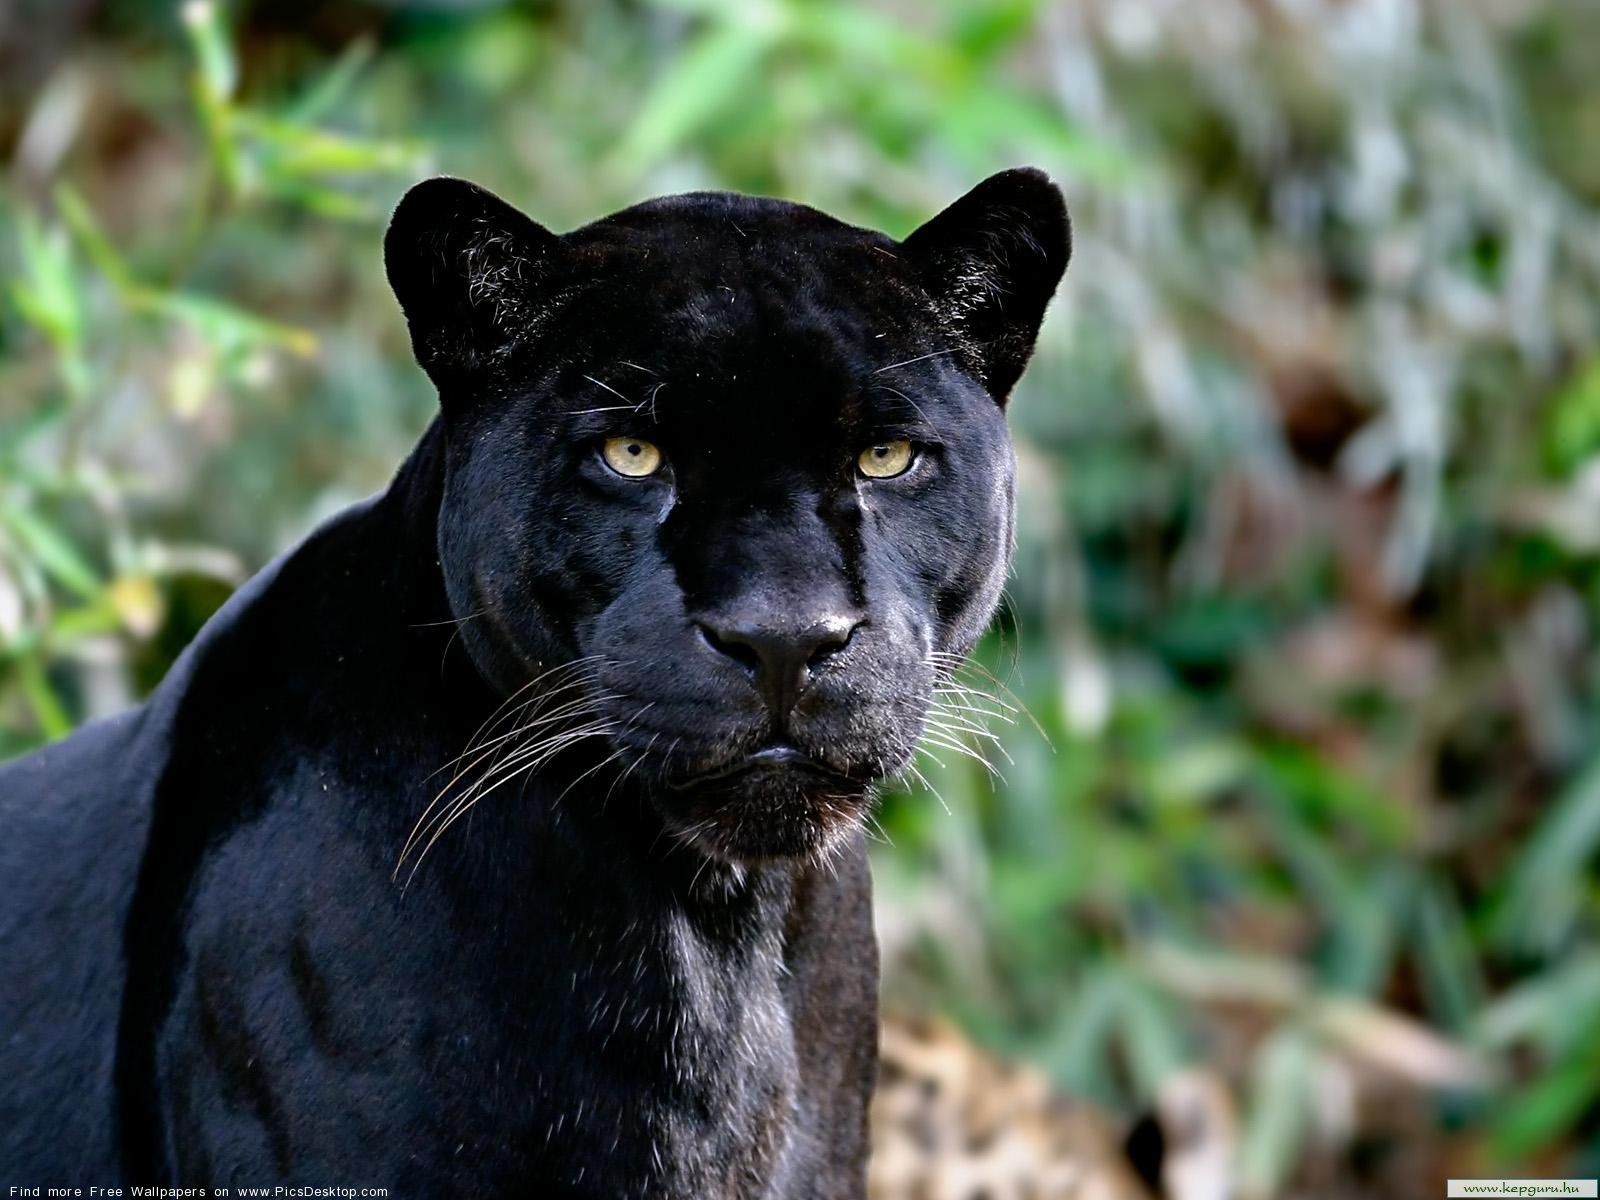 Black panther - Wild Animals - Free Desktop Wallpaper picture